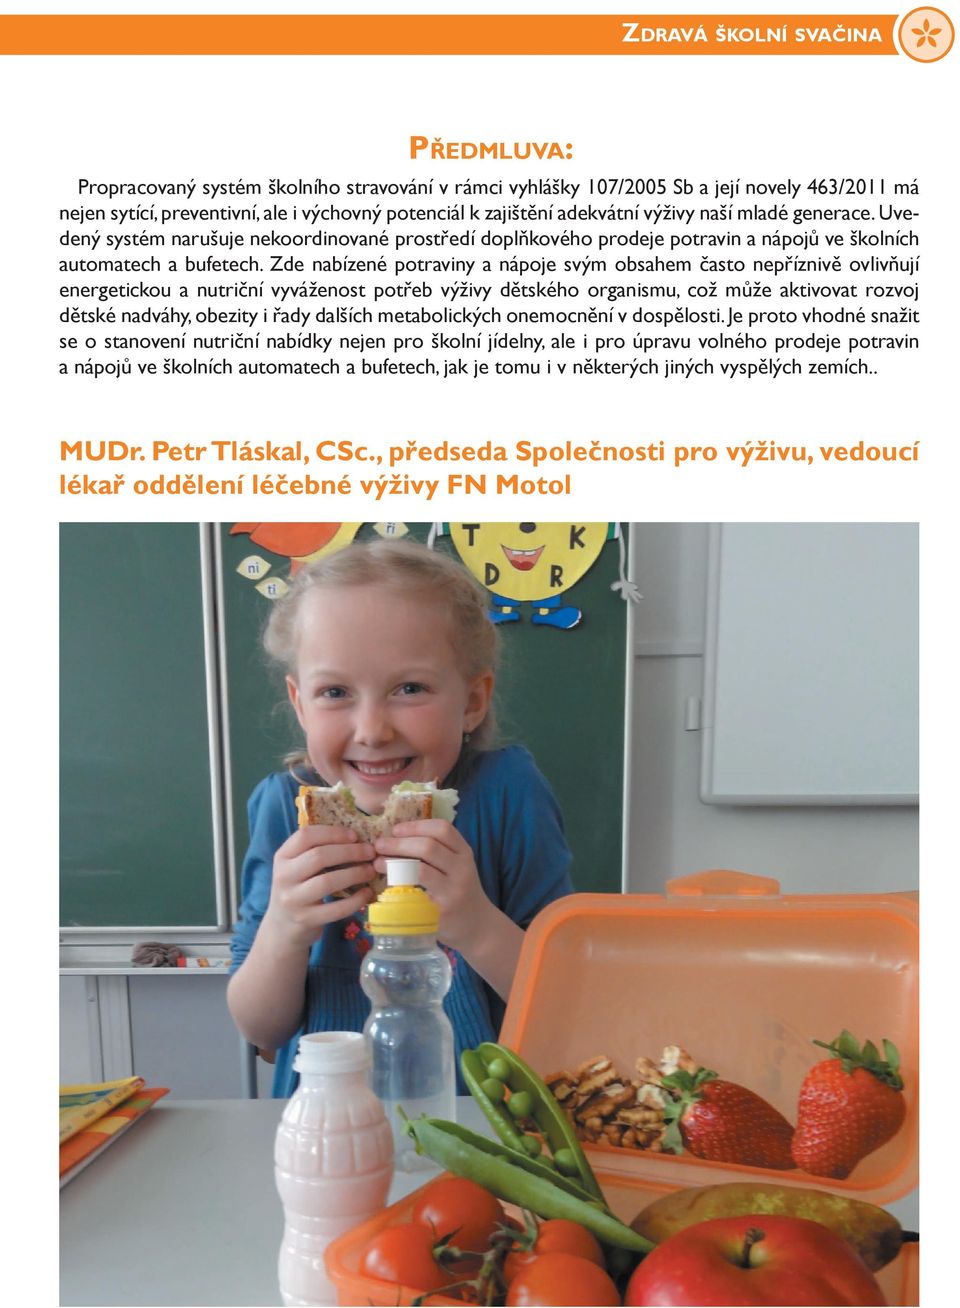 Zde nabízené potraviny a nápoje svým obsahem často nepříznivě ovlivňují energetickou a nutriční vyváženost potřeb výživy dětského organismu, což může aktivovat rozvoj dětské nadváhy, obezity i řady